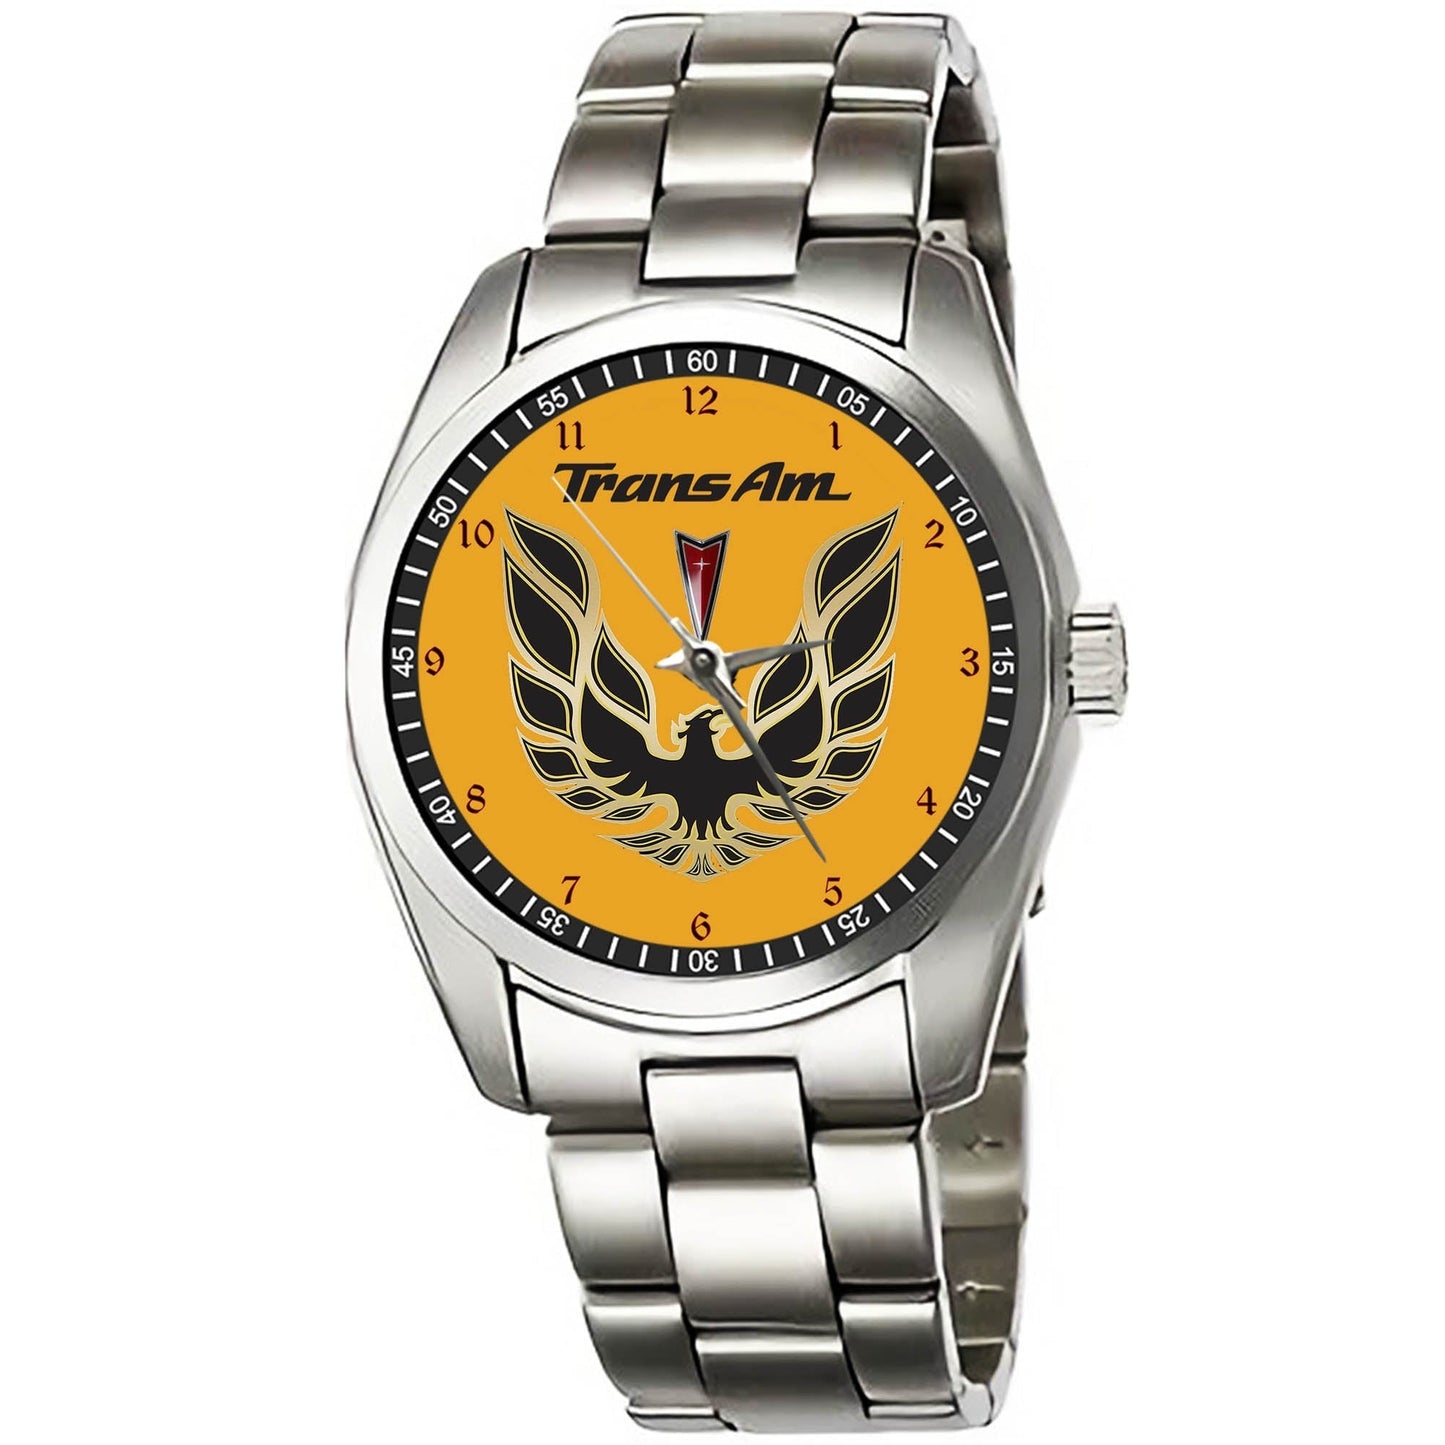 Pontiac Firebird Trans Am Watches KP288